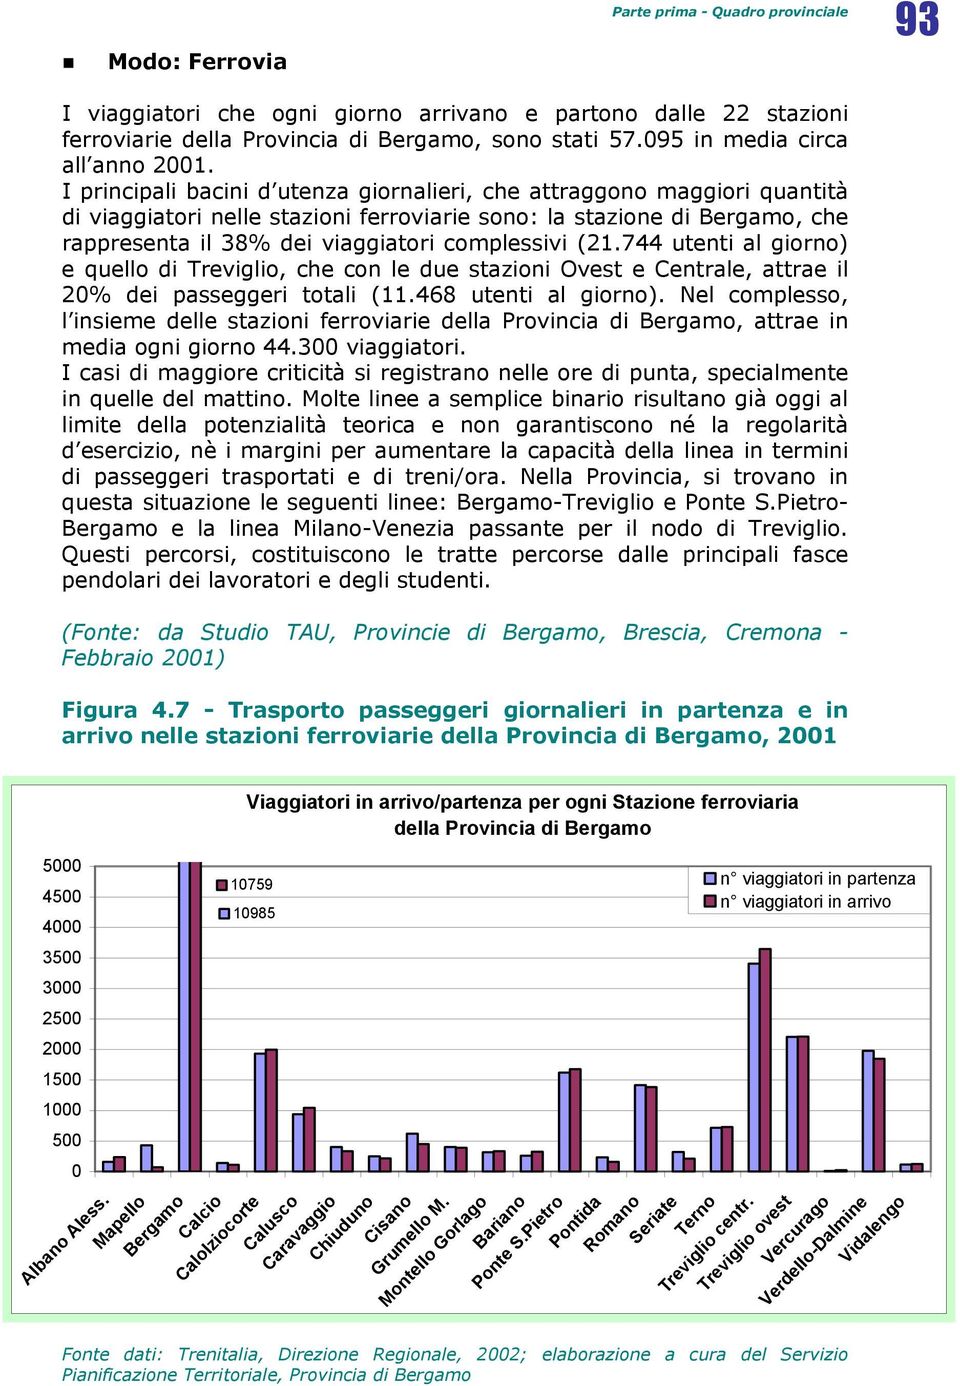 I principali bacini d utenza giornalieri, che attraggono maggiori quantità di viaggiatori nelle stazioni ferroviarie sono: la stazione di Bergamo, che rappresenta il 38% dei viaggiatori complessivi